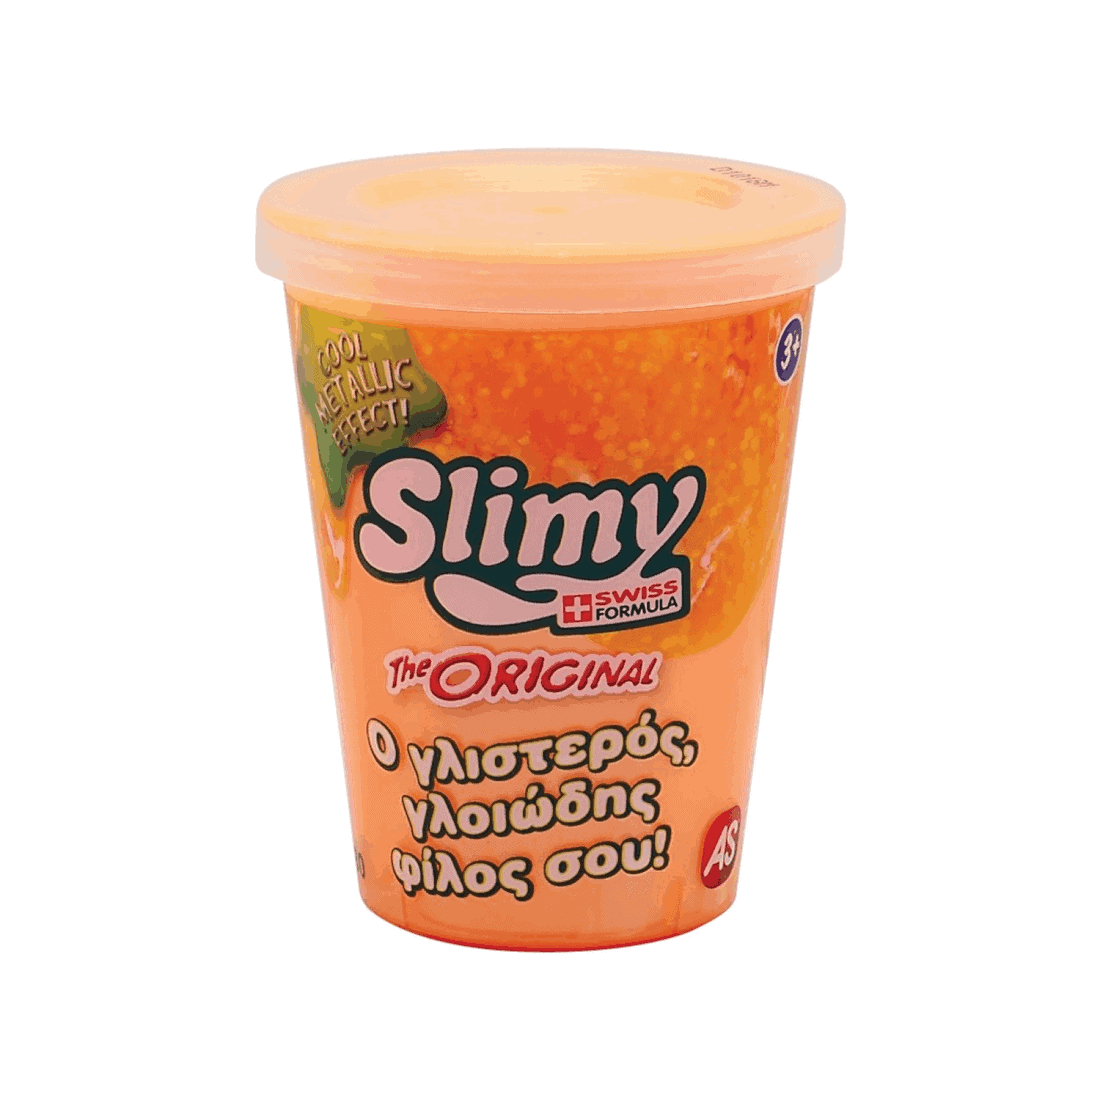 Χλαπατσα Original Slimy Metallic - Πορτοκαλί